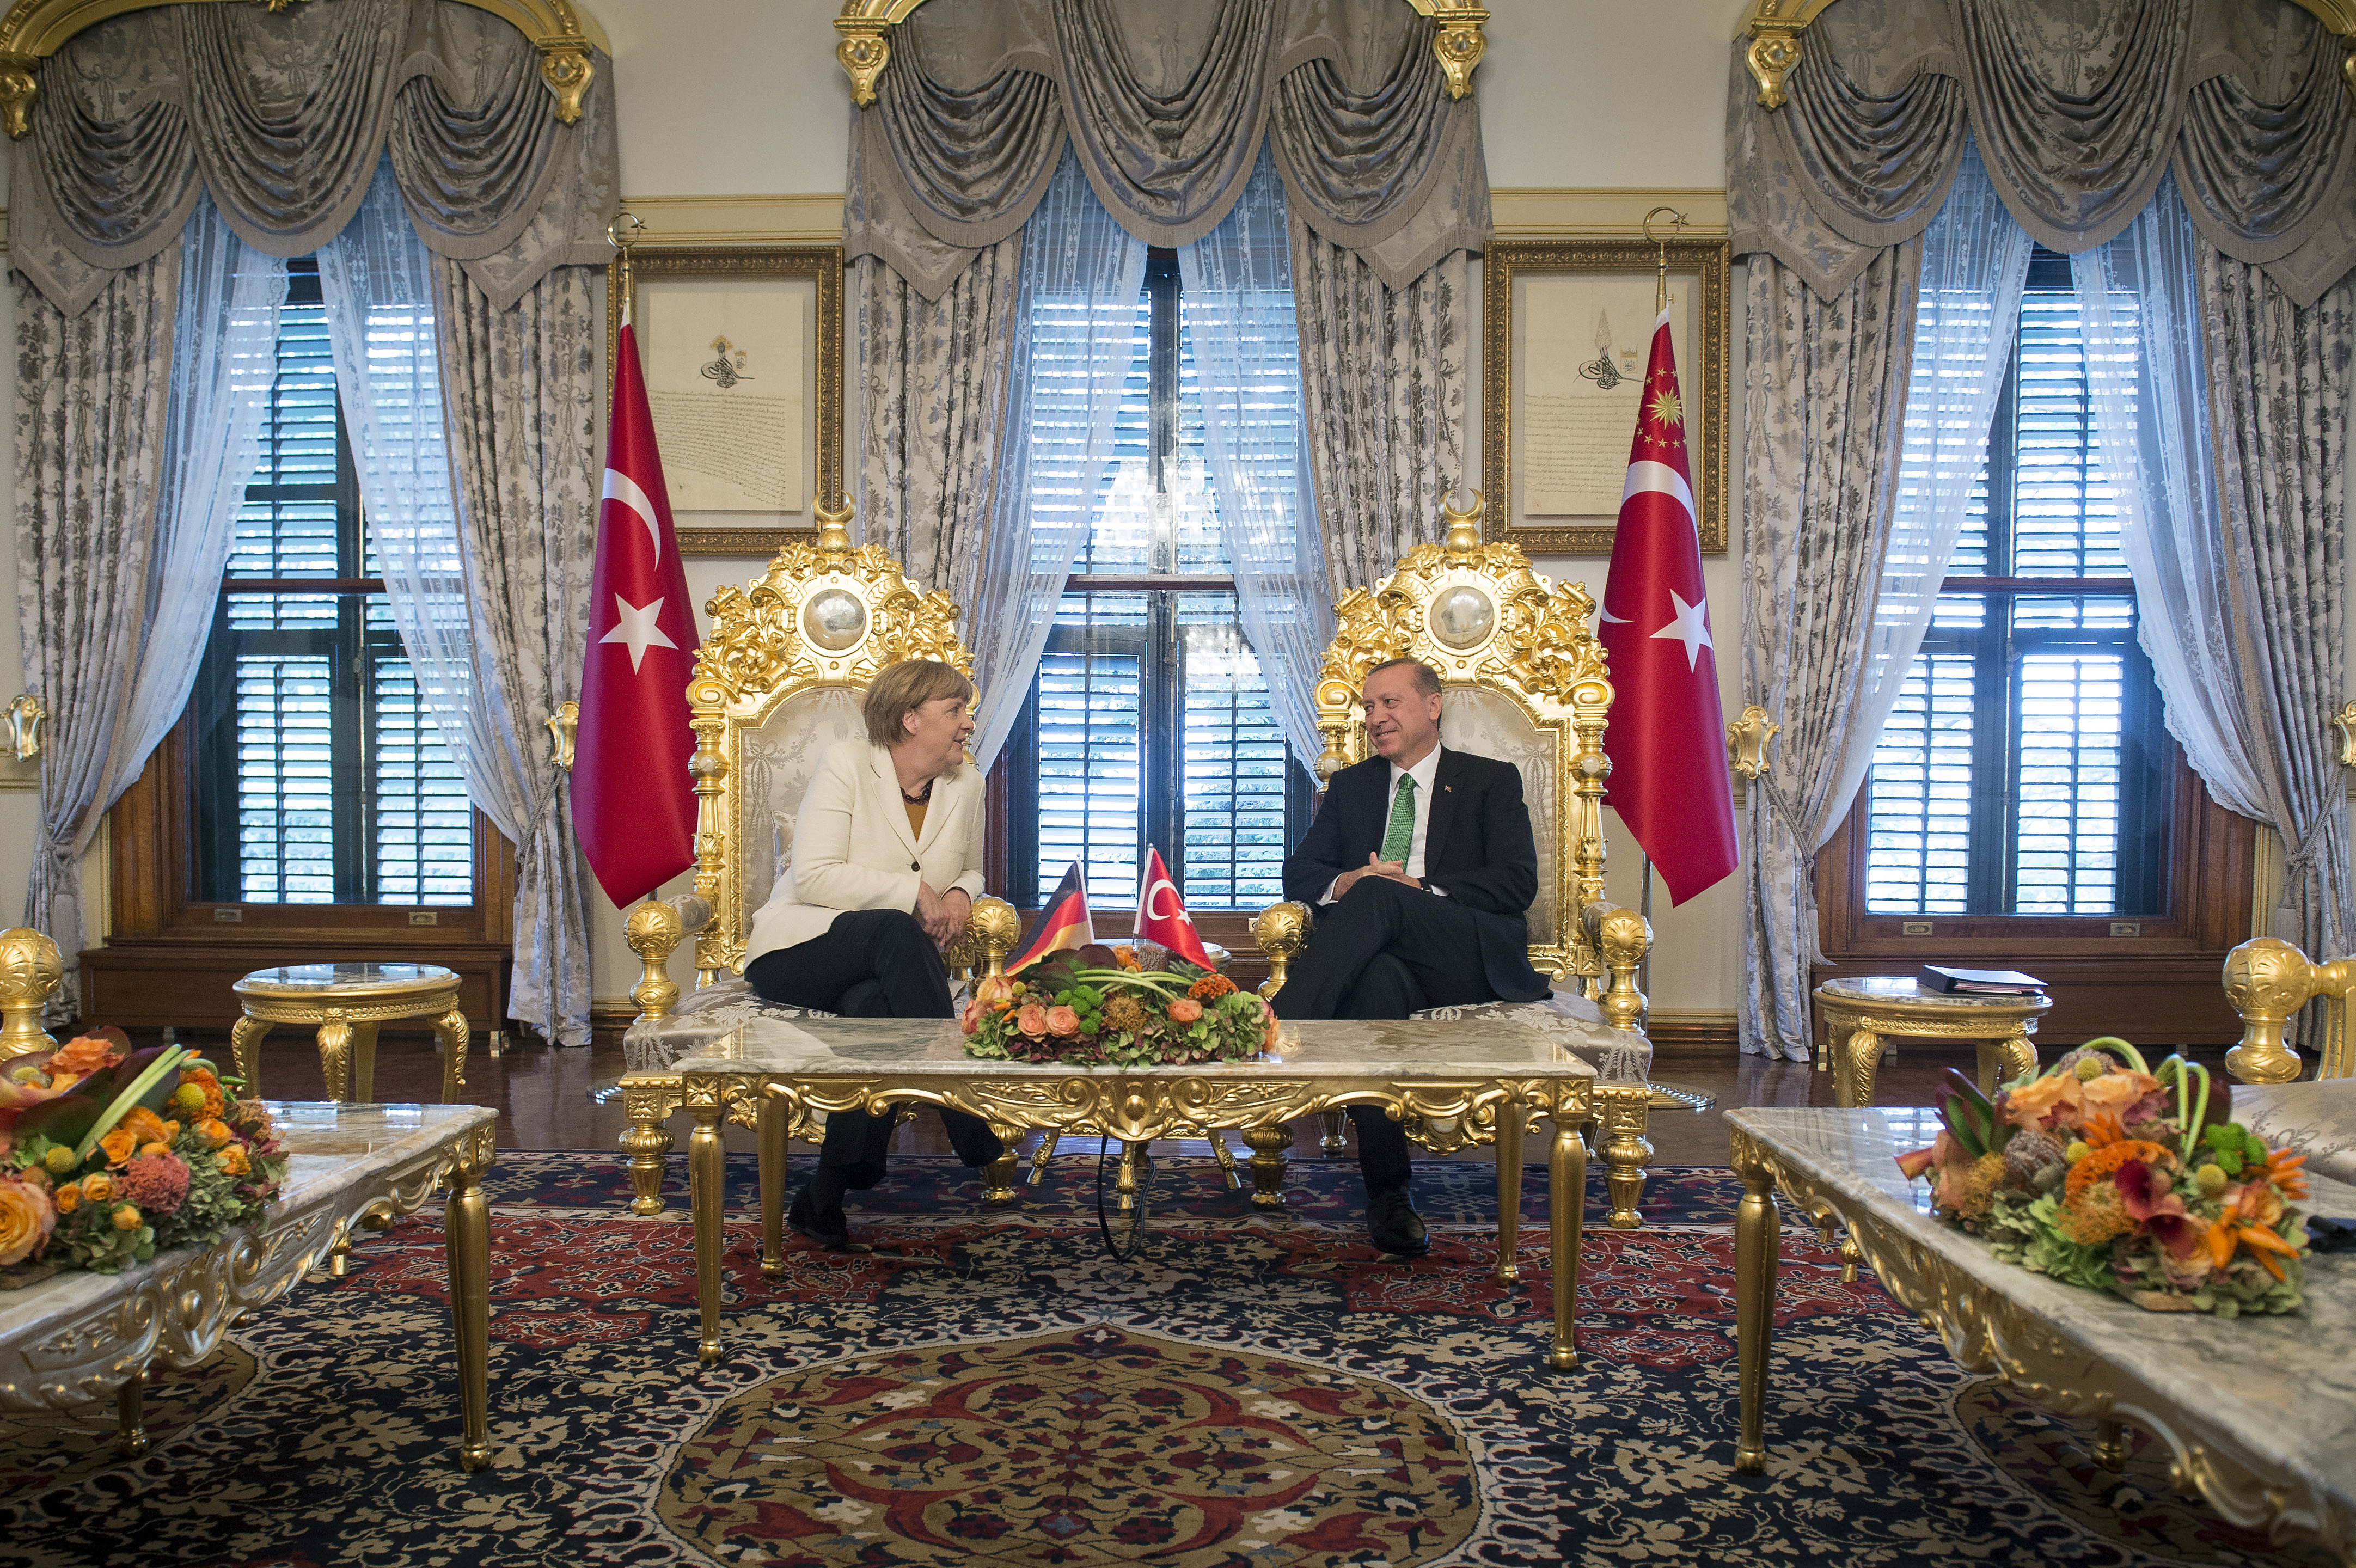 Ali ante portas – oder weshalb die Türkei niemals Vollmitglied der EU sein kann